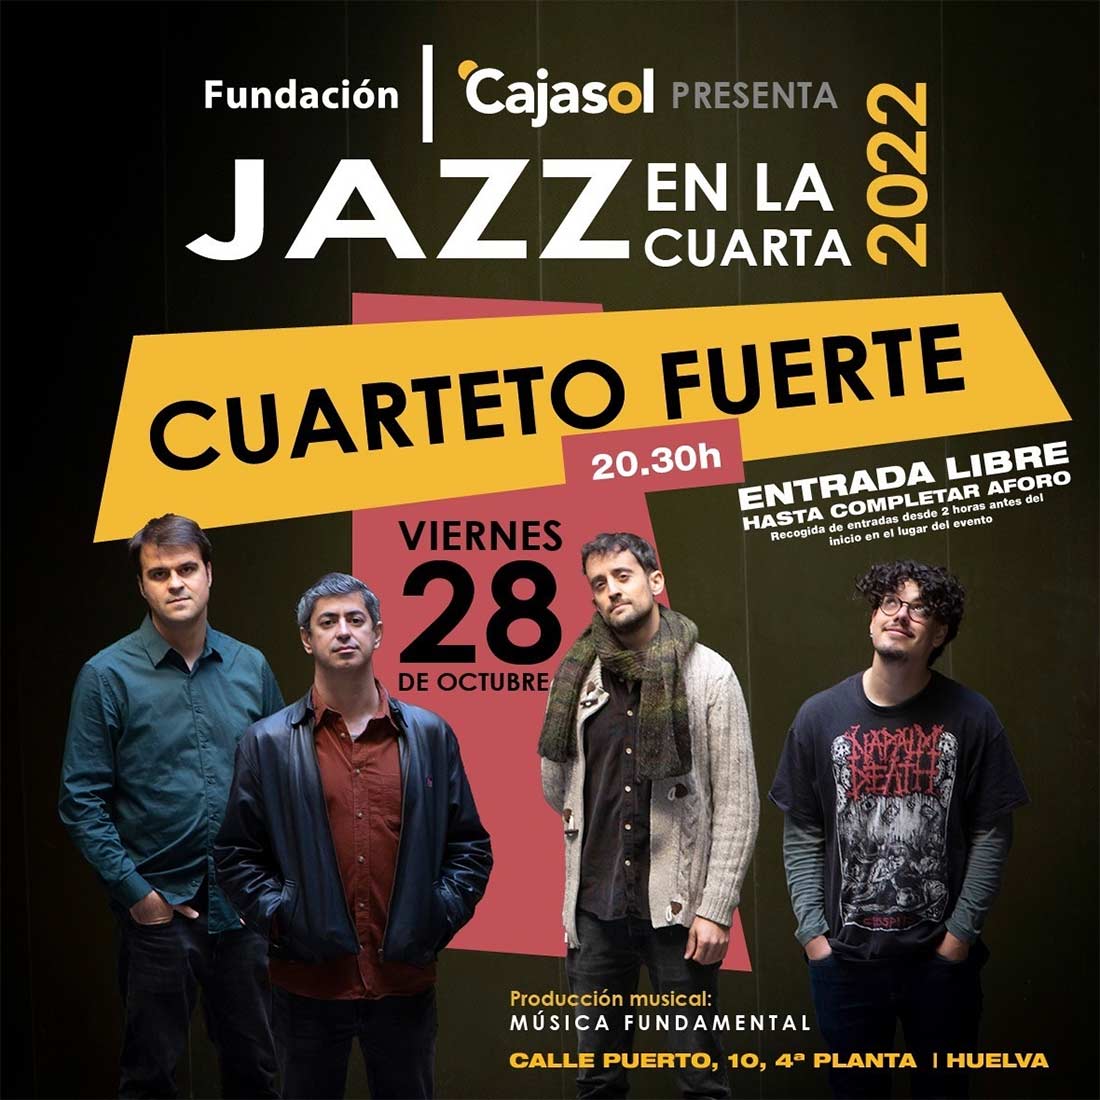 Cuarteto Fuerte Jazz en la cuarta Cajasol 28 de octubre